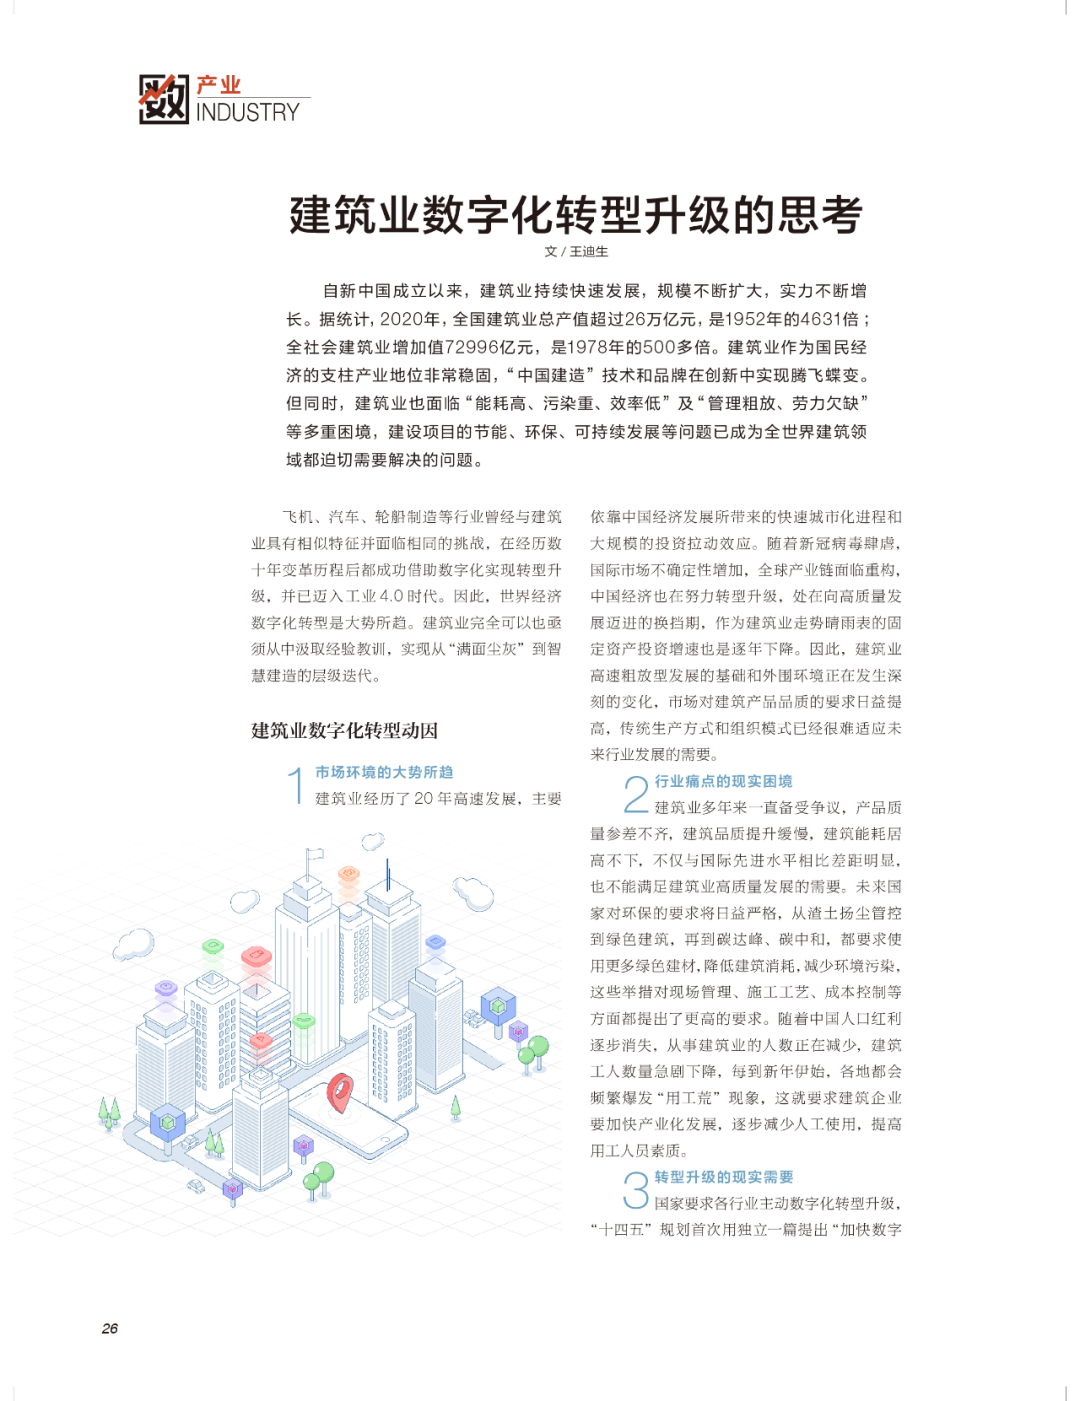 王迪生：建筑业数字化转型升级的思考｜《产业转型研究》专刊报道